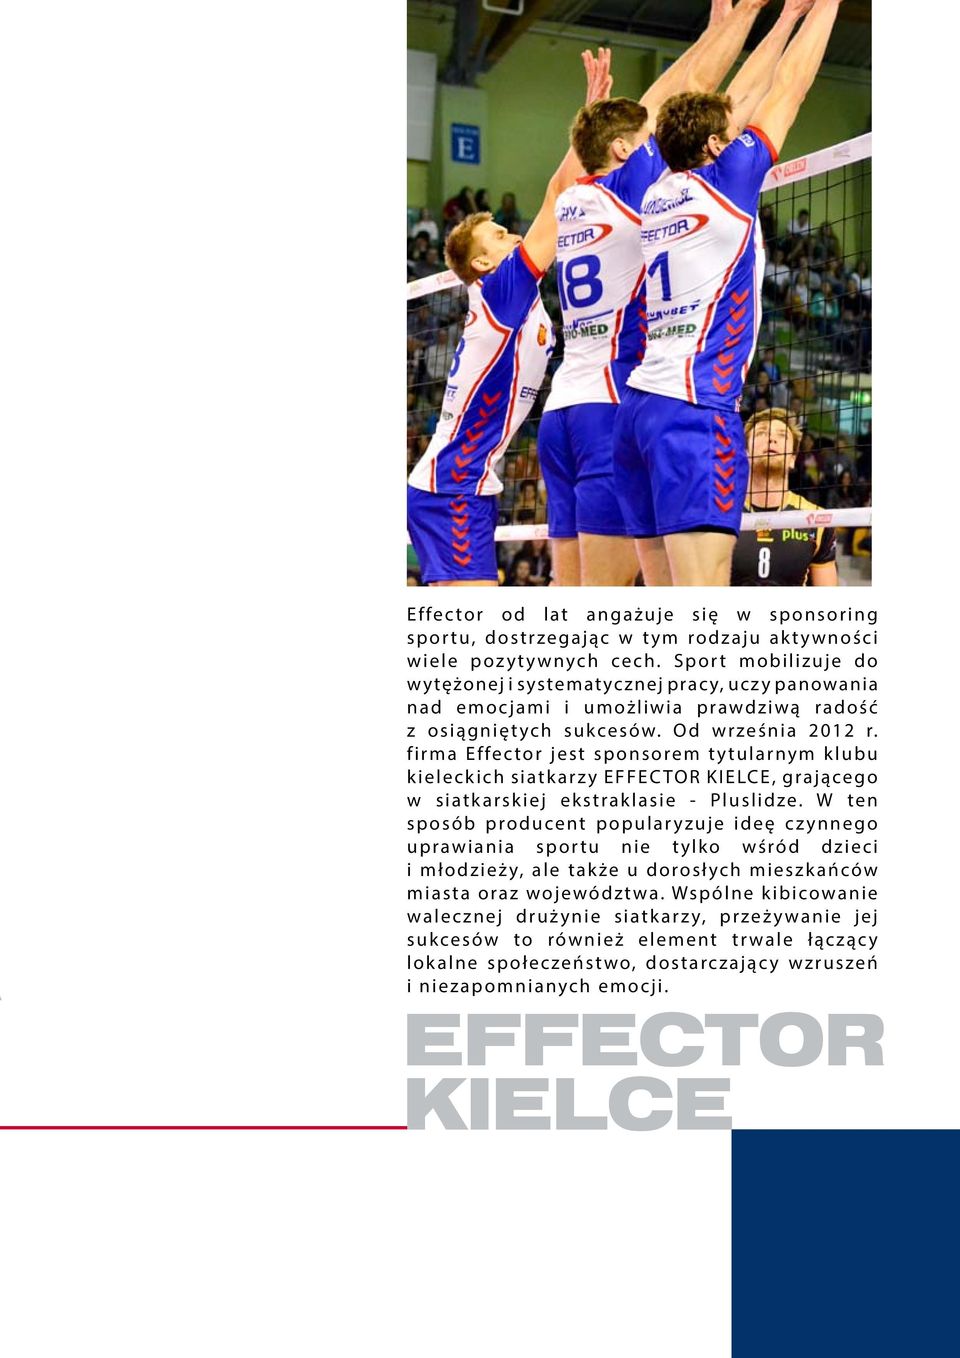 firma Effector jest sponsorem tytularnym klubu kieleckich siatkarzy EFFECTOR KIELCE, grającego w siatkarskiej ekstraklasie - Pluslidze.